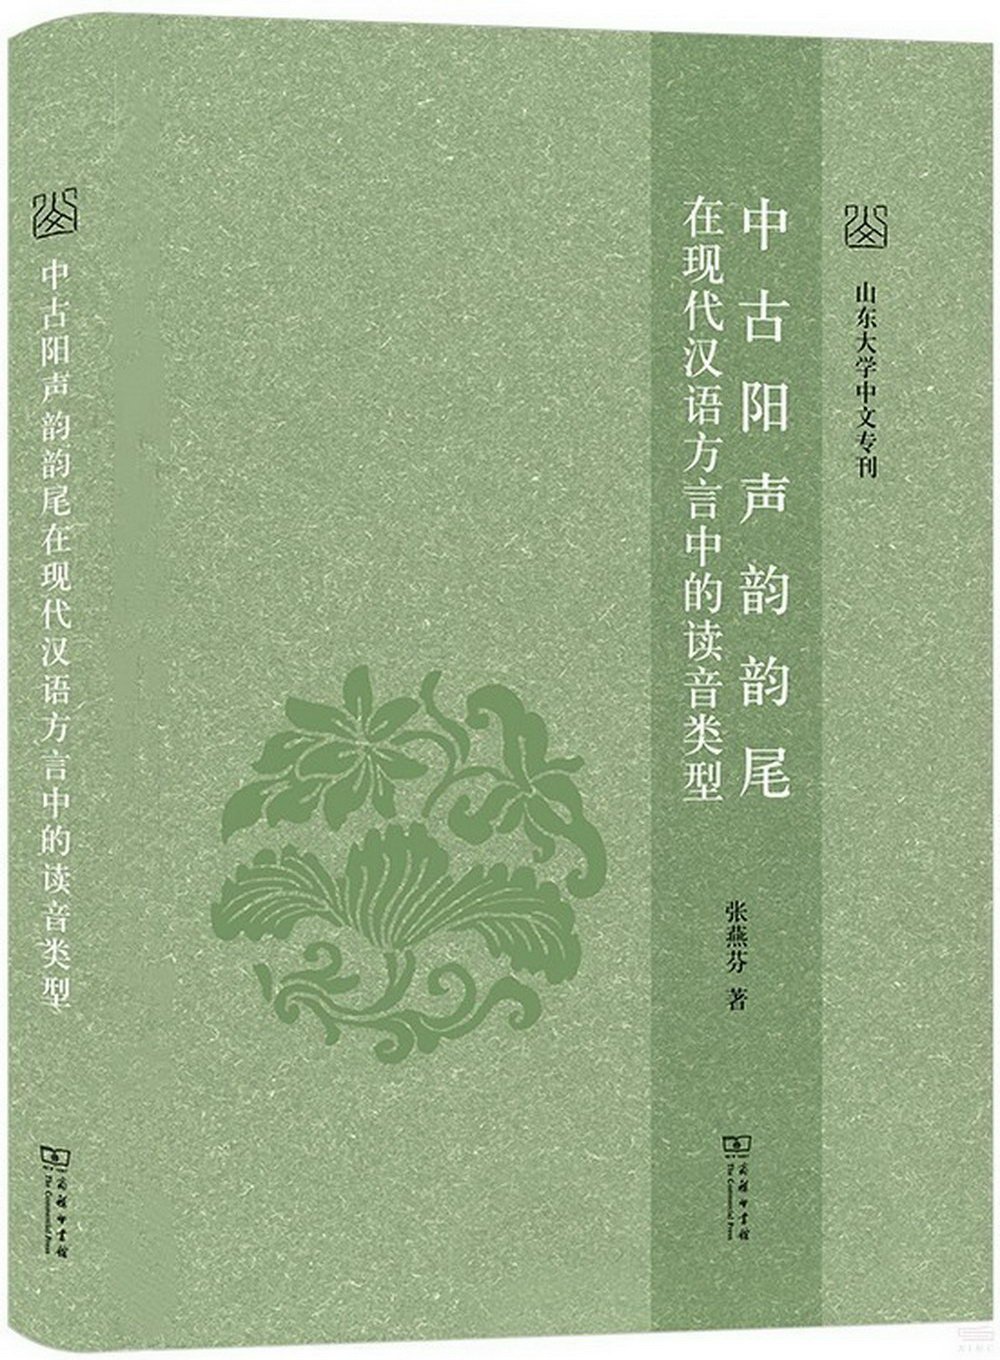 中古陽聲韻韻尾在現代漢語方言中的讀音類型